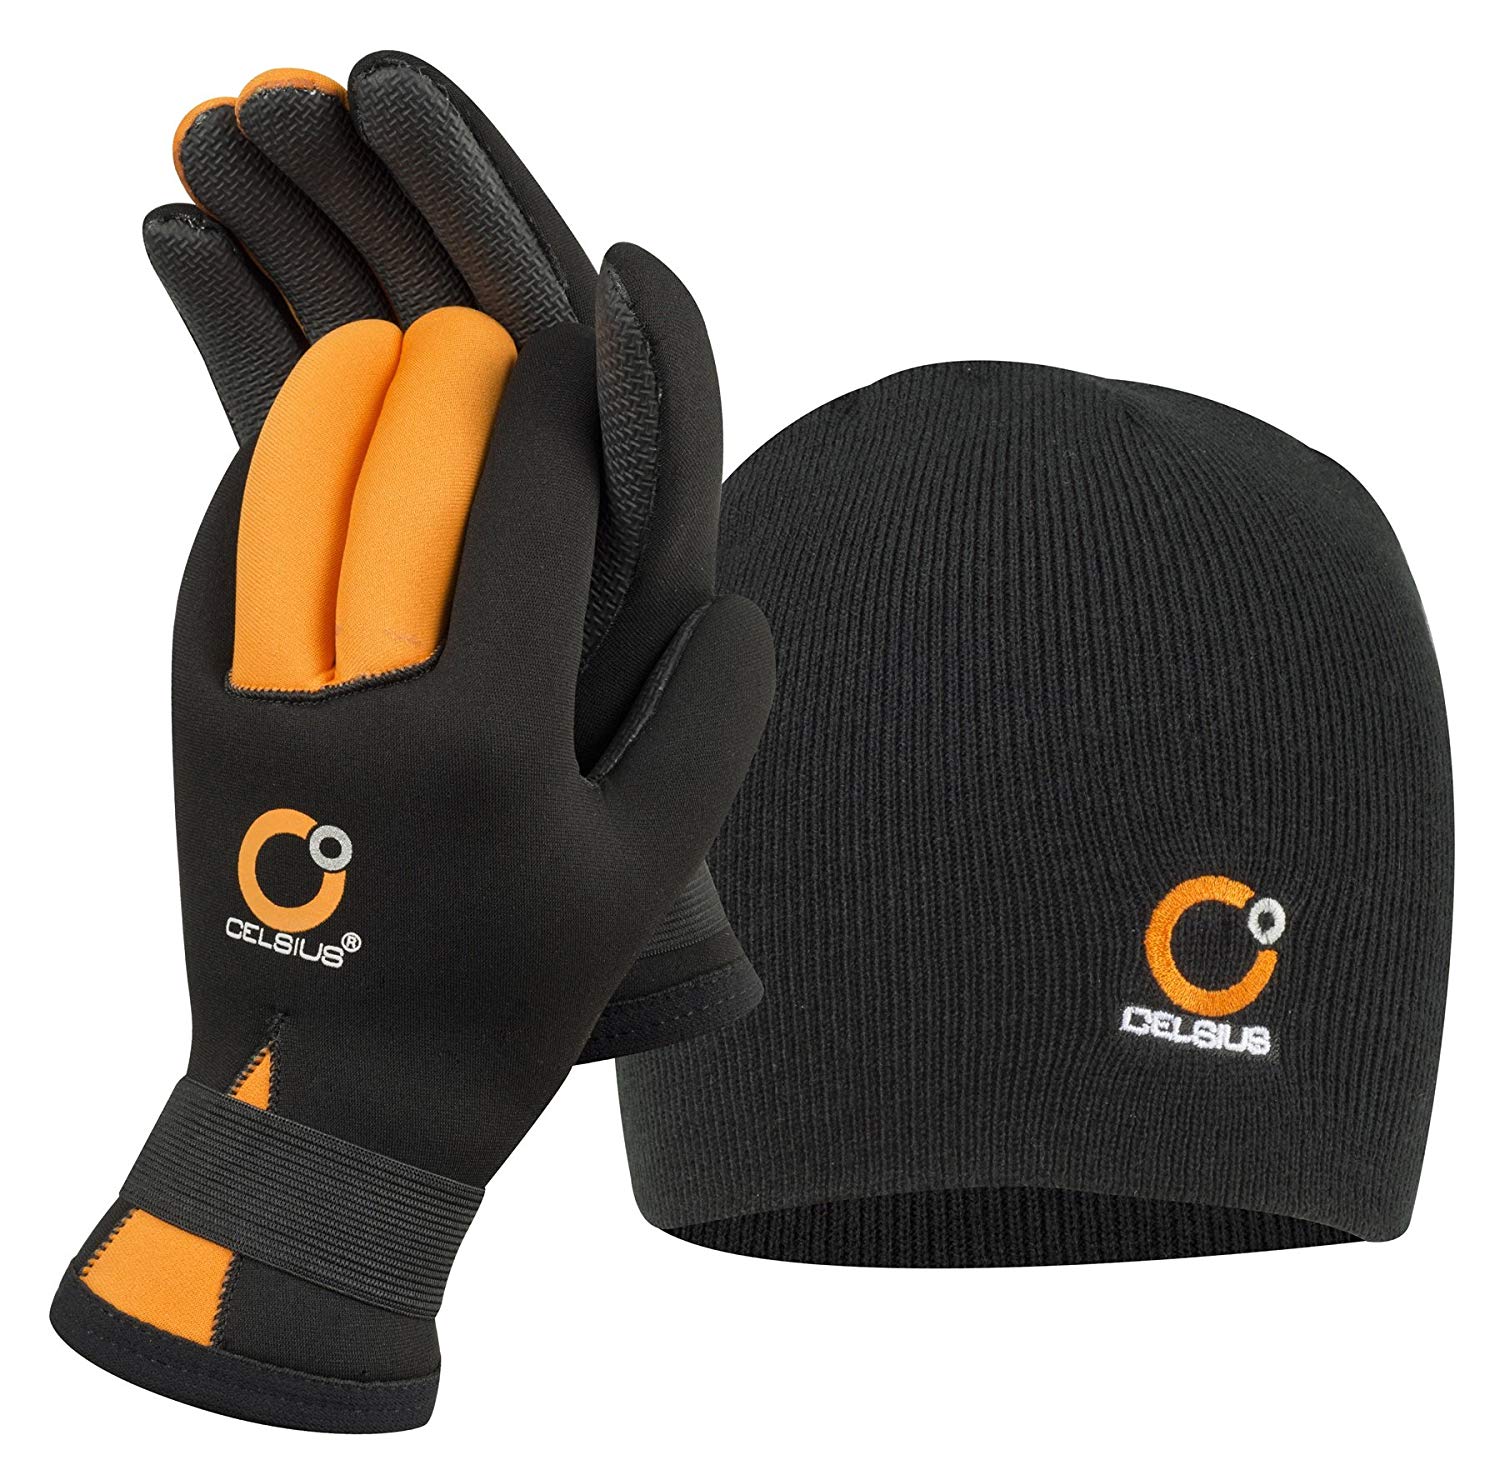 Celsius Deluxe Neoprene Waterproof Adjustable Glove w/ Hat Combo